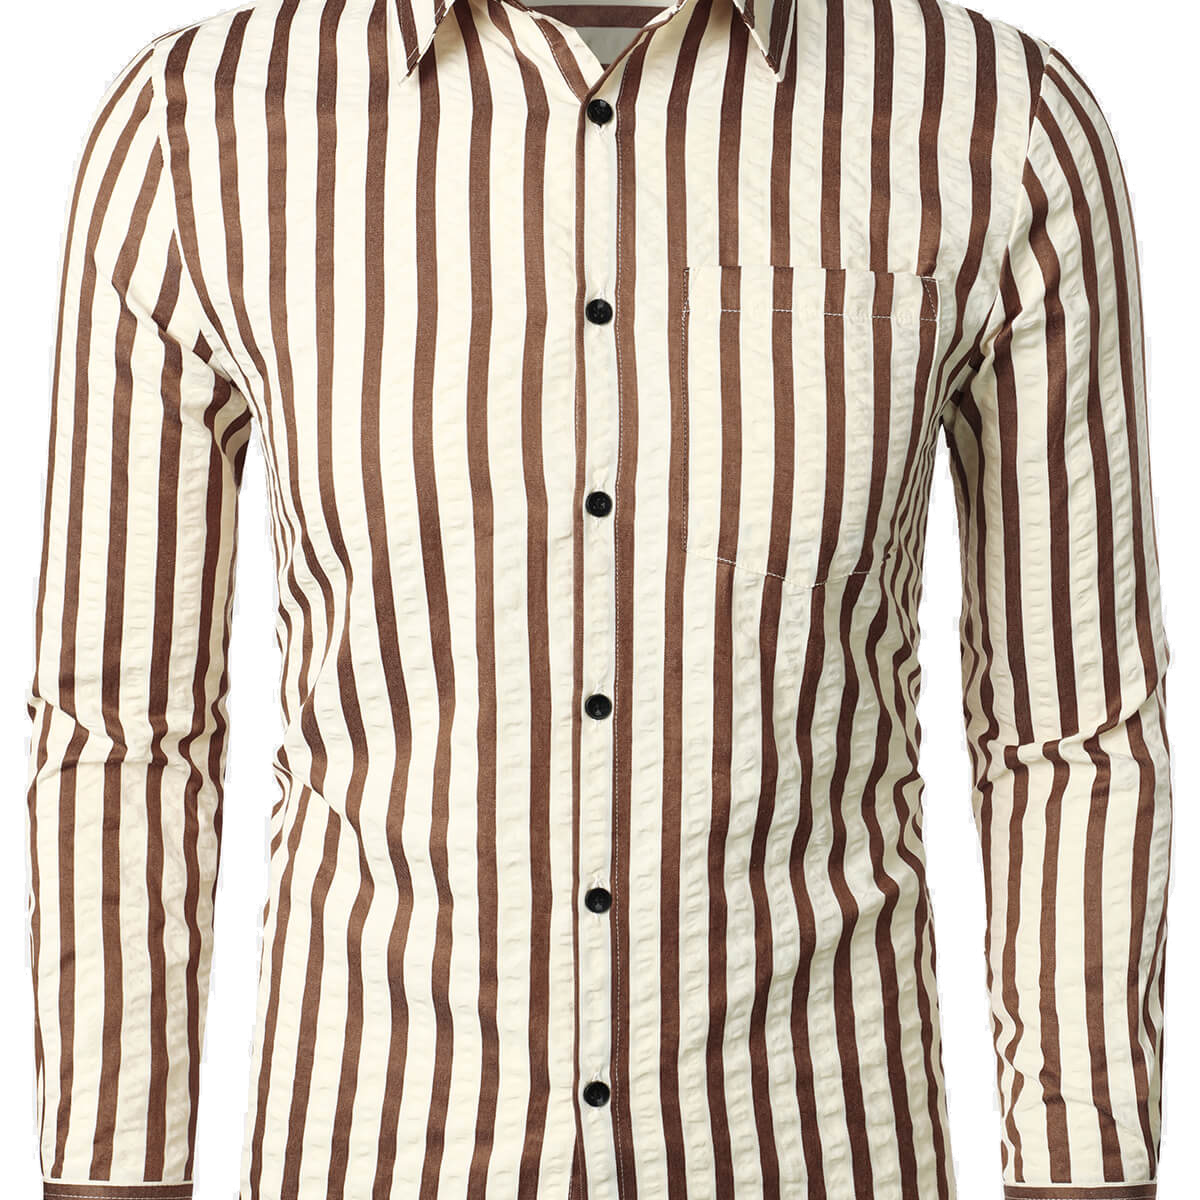 Camisa casual de manga larga transpirable con botones y bolsillo a rayas para hombre